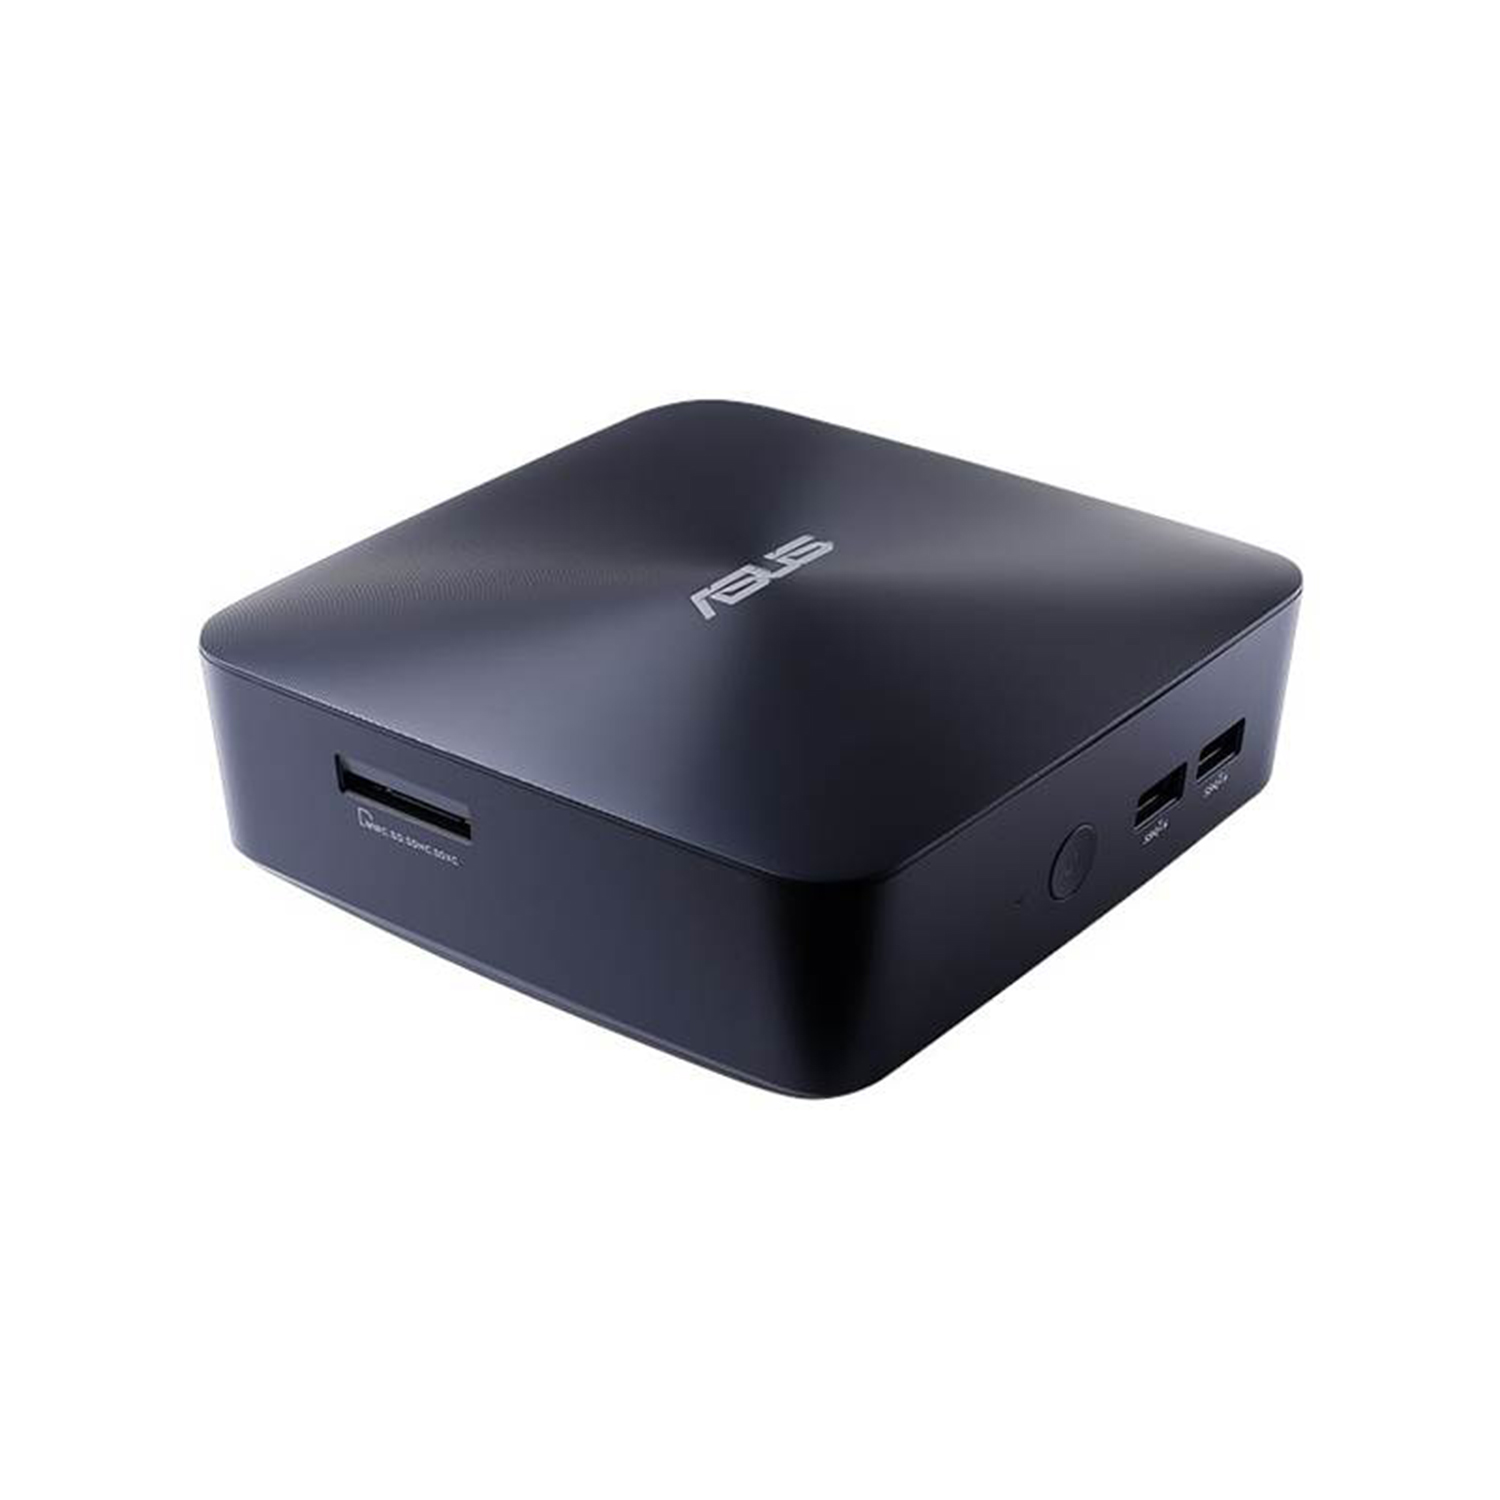 Asus UN68U MiniPC i7-8550u 8G 256GB M.2 SSD HDMI DP W10P64 2yrs Pickup&return Warranty